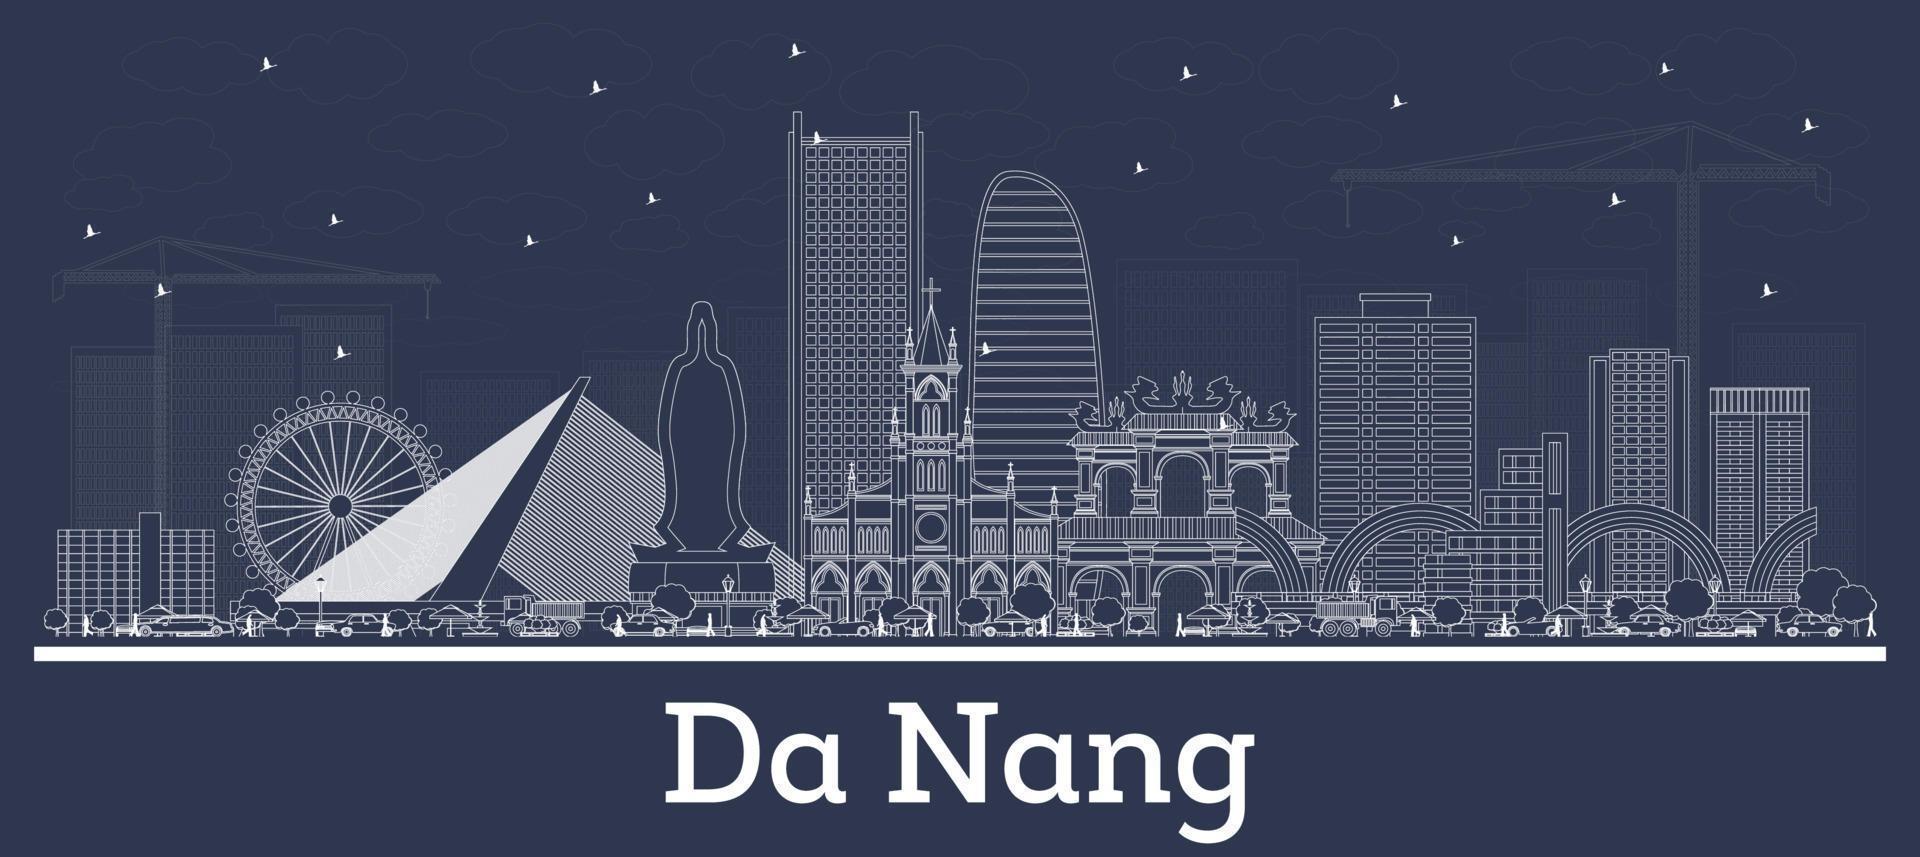 Décrire les toits de la ville de da nang vietnam avec des bâtiments blancs. vecteur